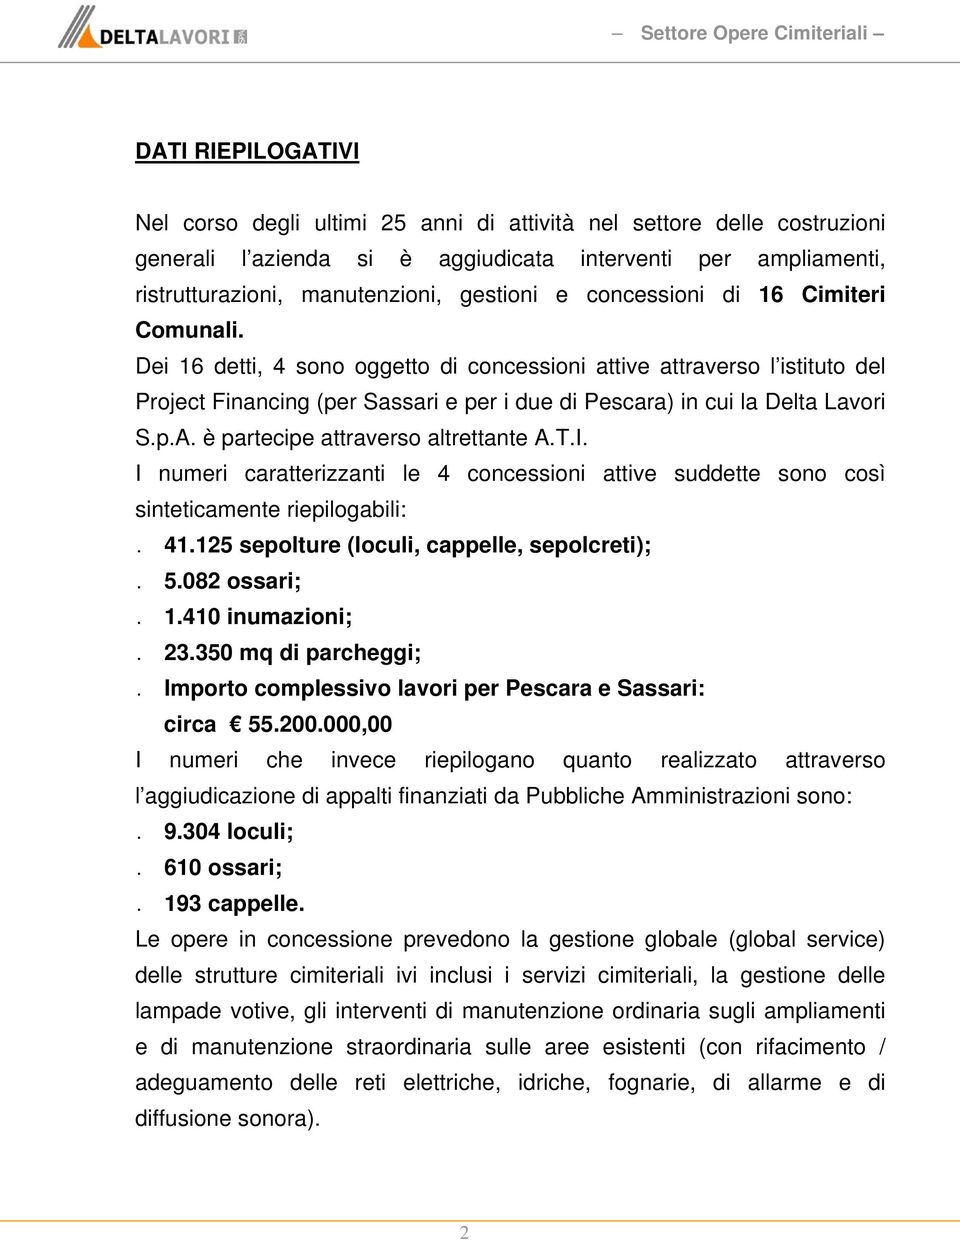 Dei 16 detti, 4 sono oggetto di concessioni attive attraverso l istituto del Project Financing (per Sassari e per i due di Pescara) in cui la Delta Lavori S.p.A. è partecipe attraverso altrettante A.